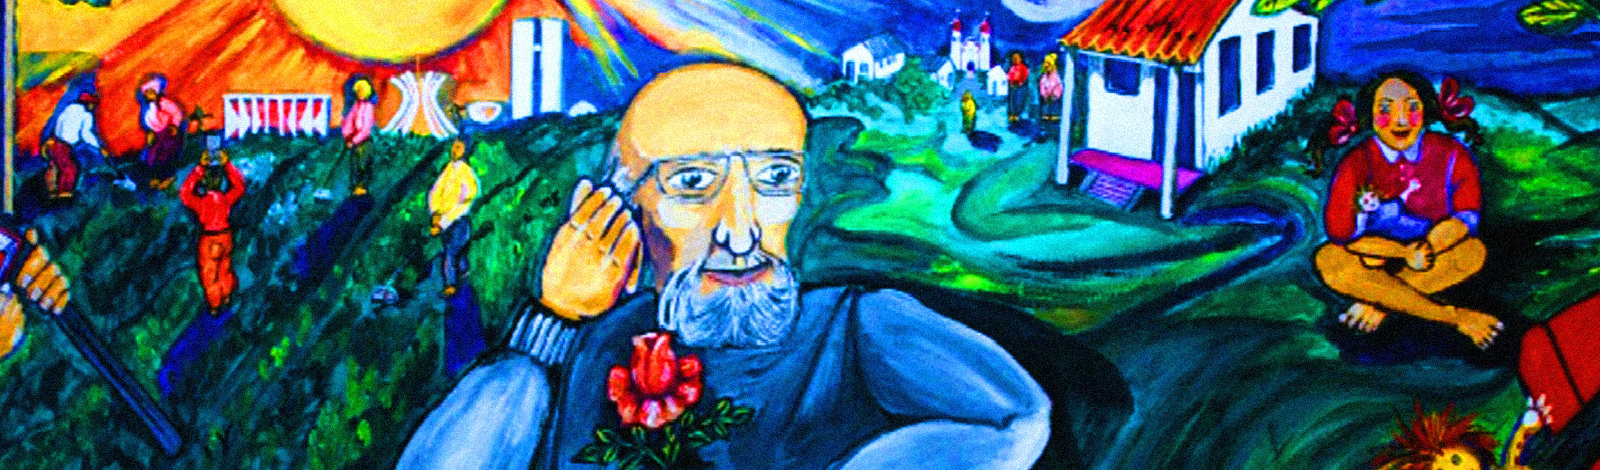 Esperançar América Latina: campanha resgata legado de Paulo Freire próximo a centenário